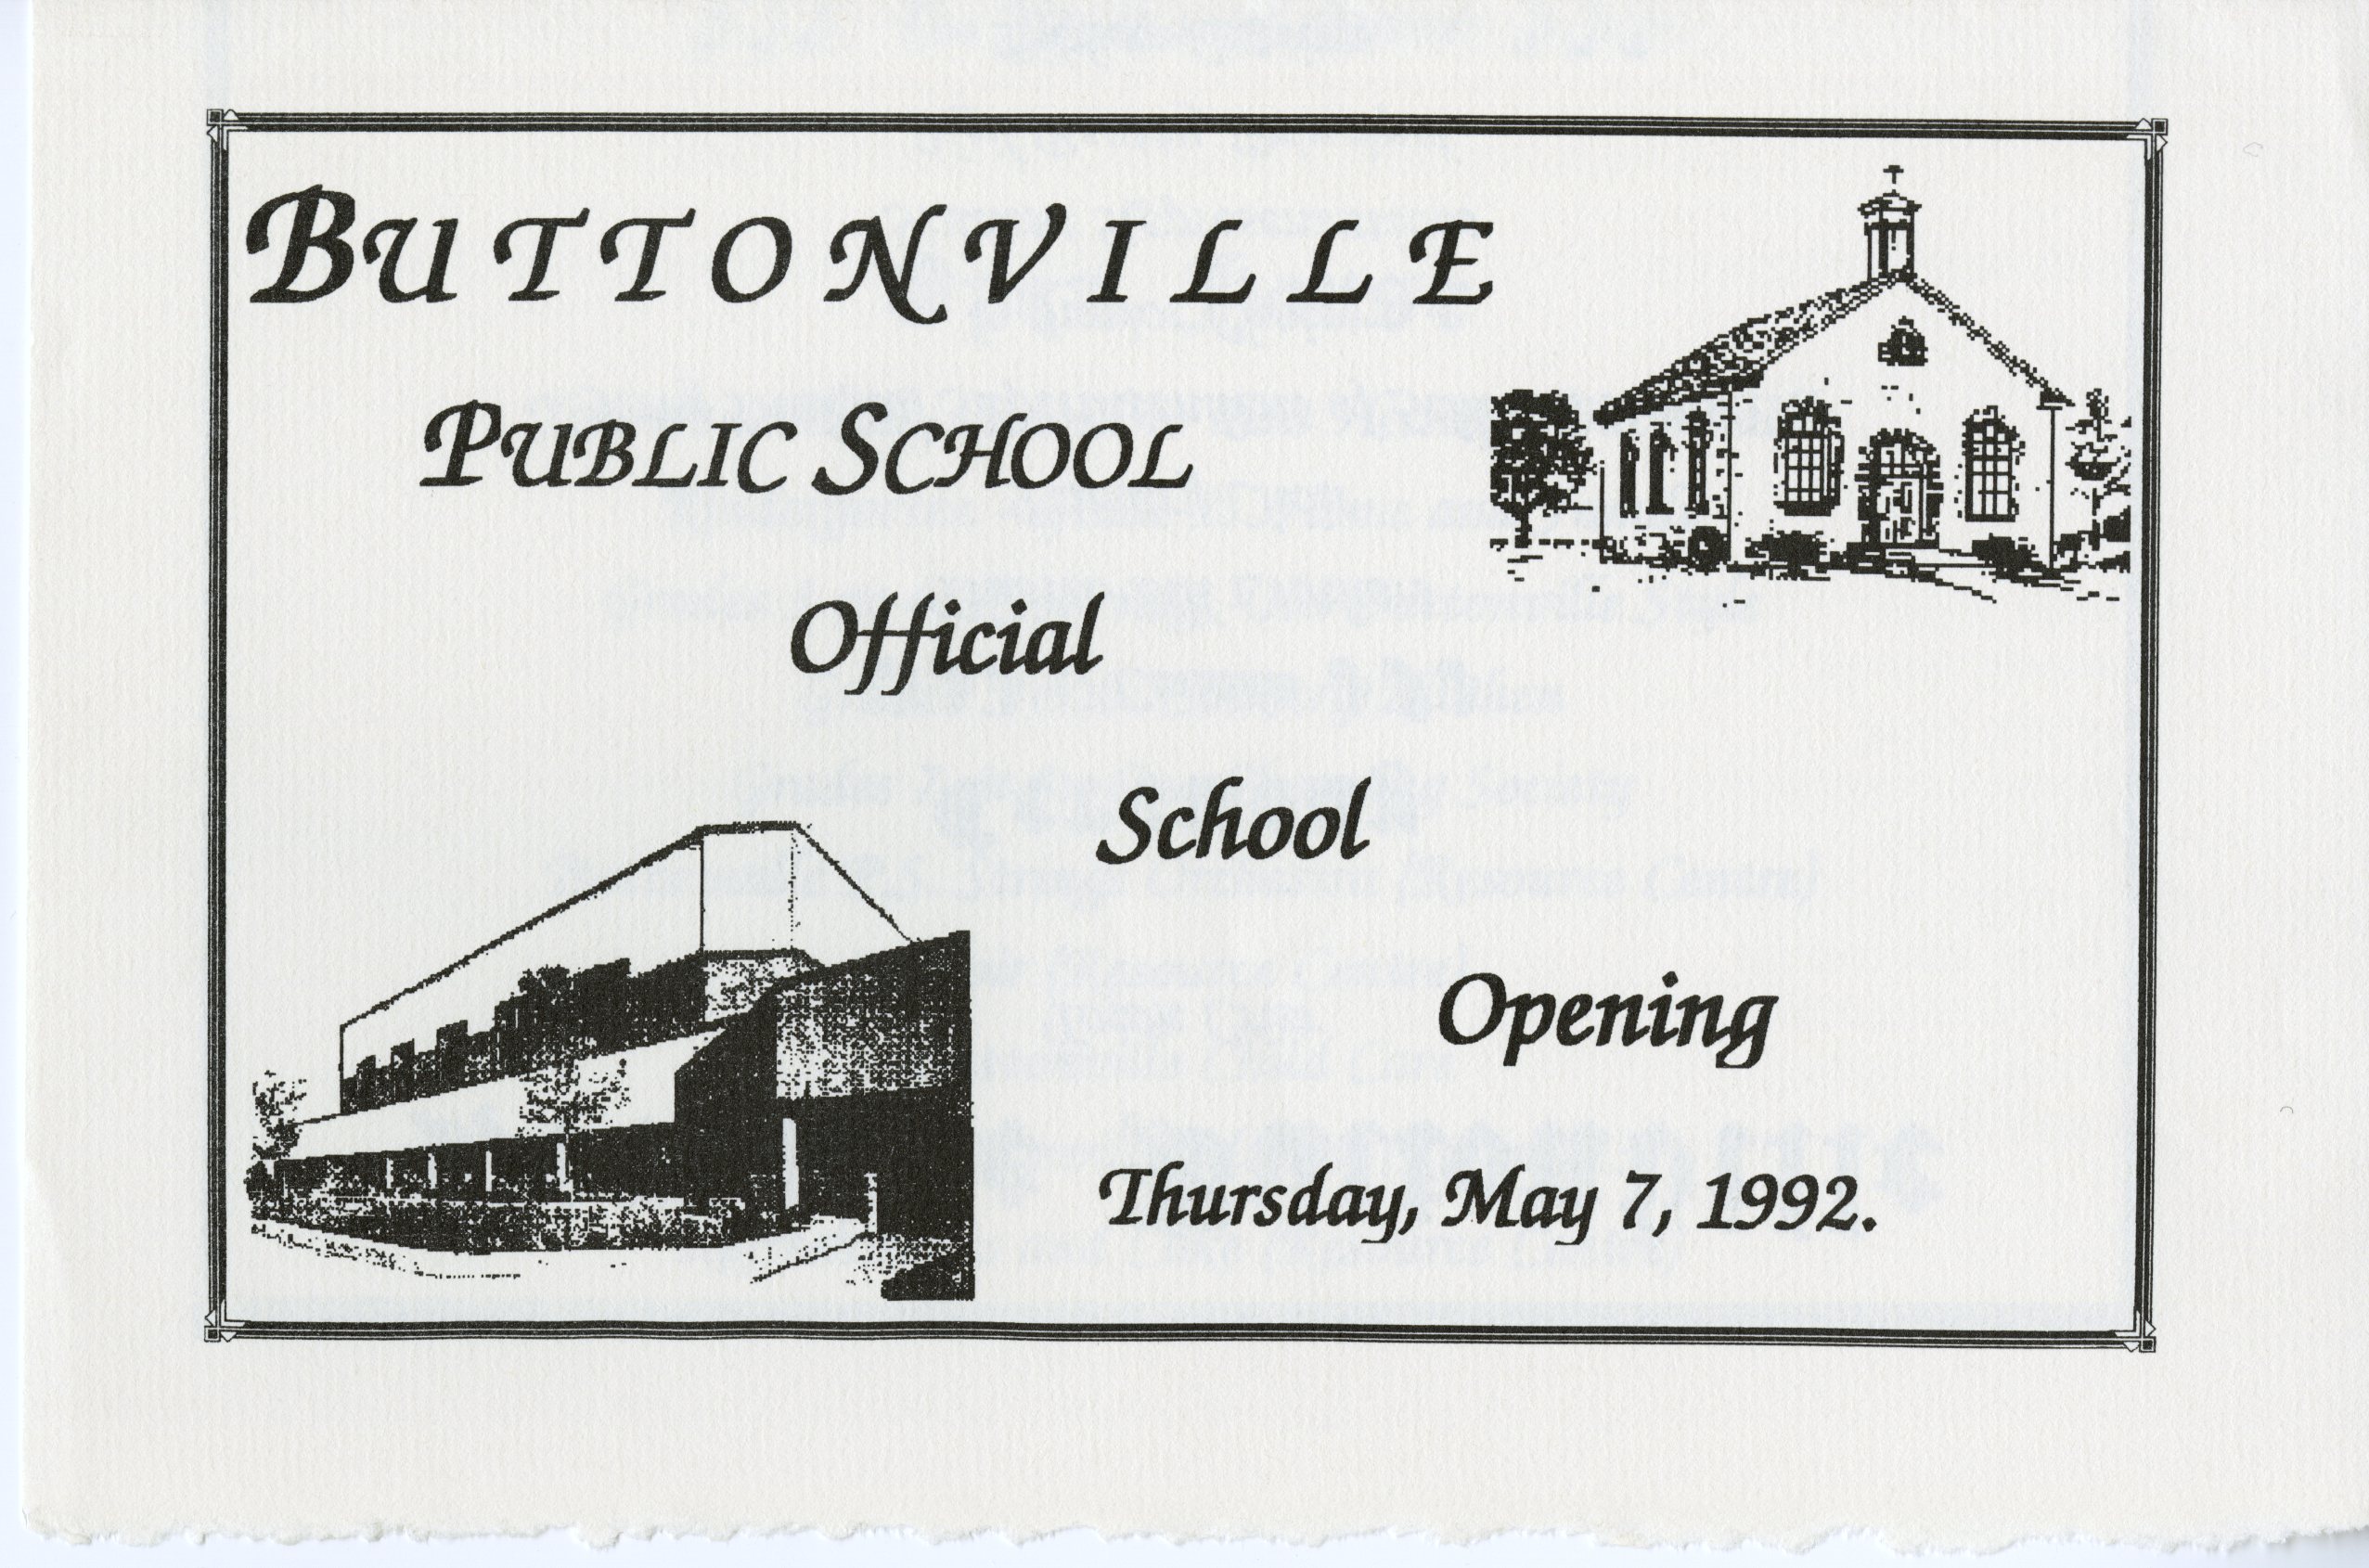 Buttonville invite001.jpg